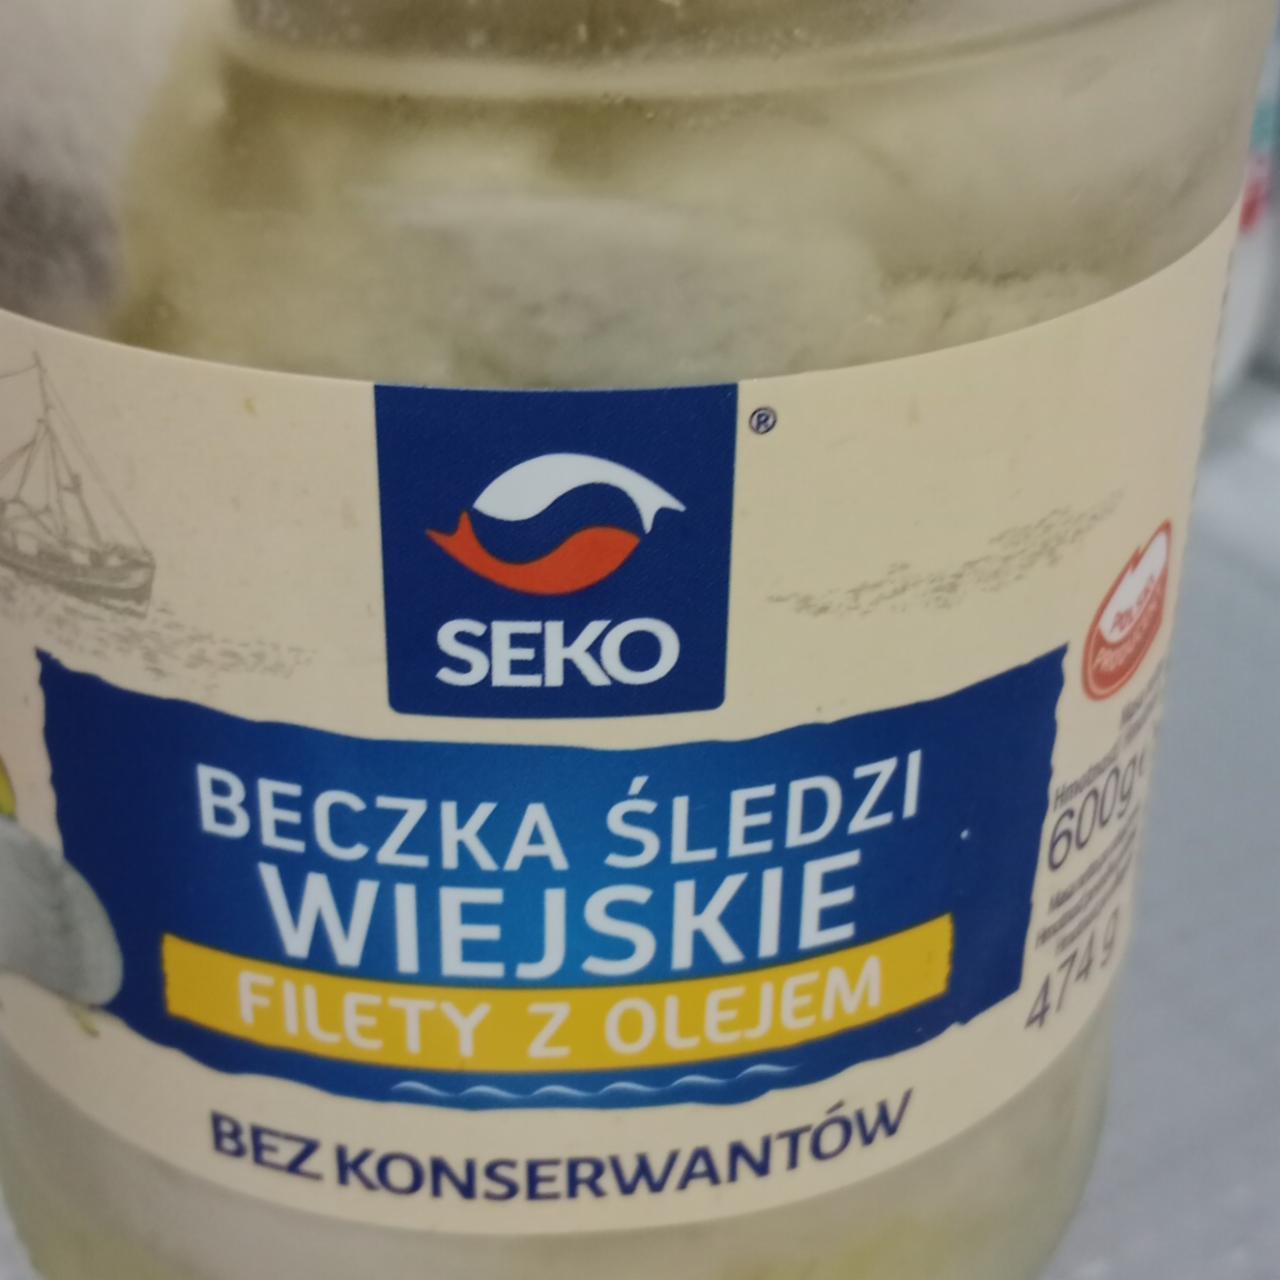 Zdjęcia - Beczka śledzi wiejskie filety z olejem SEKO